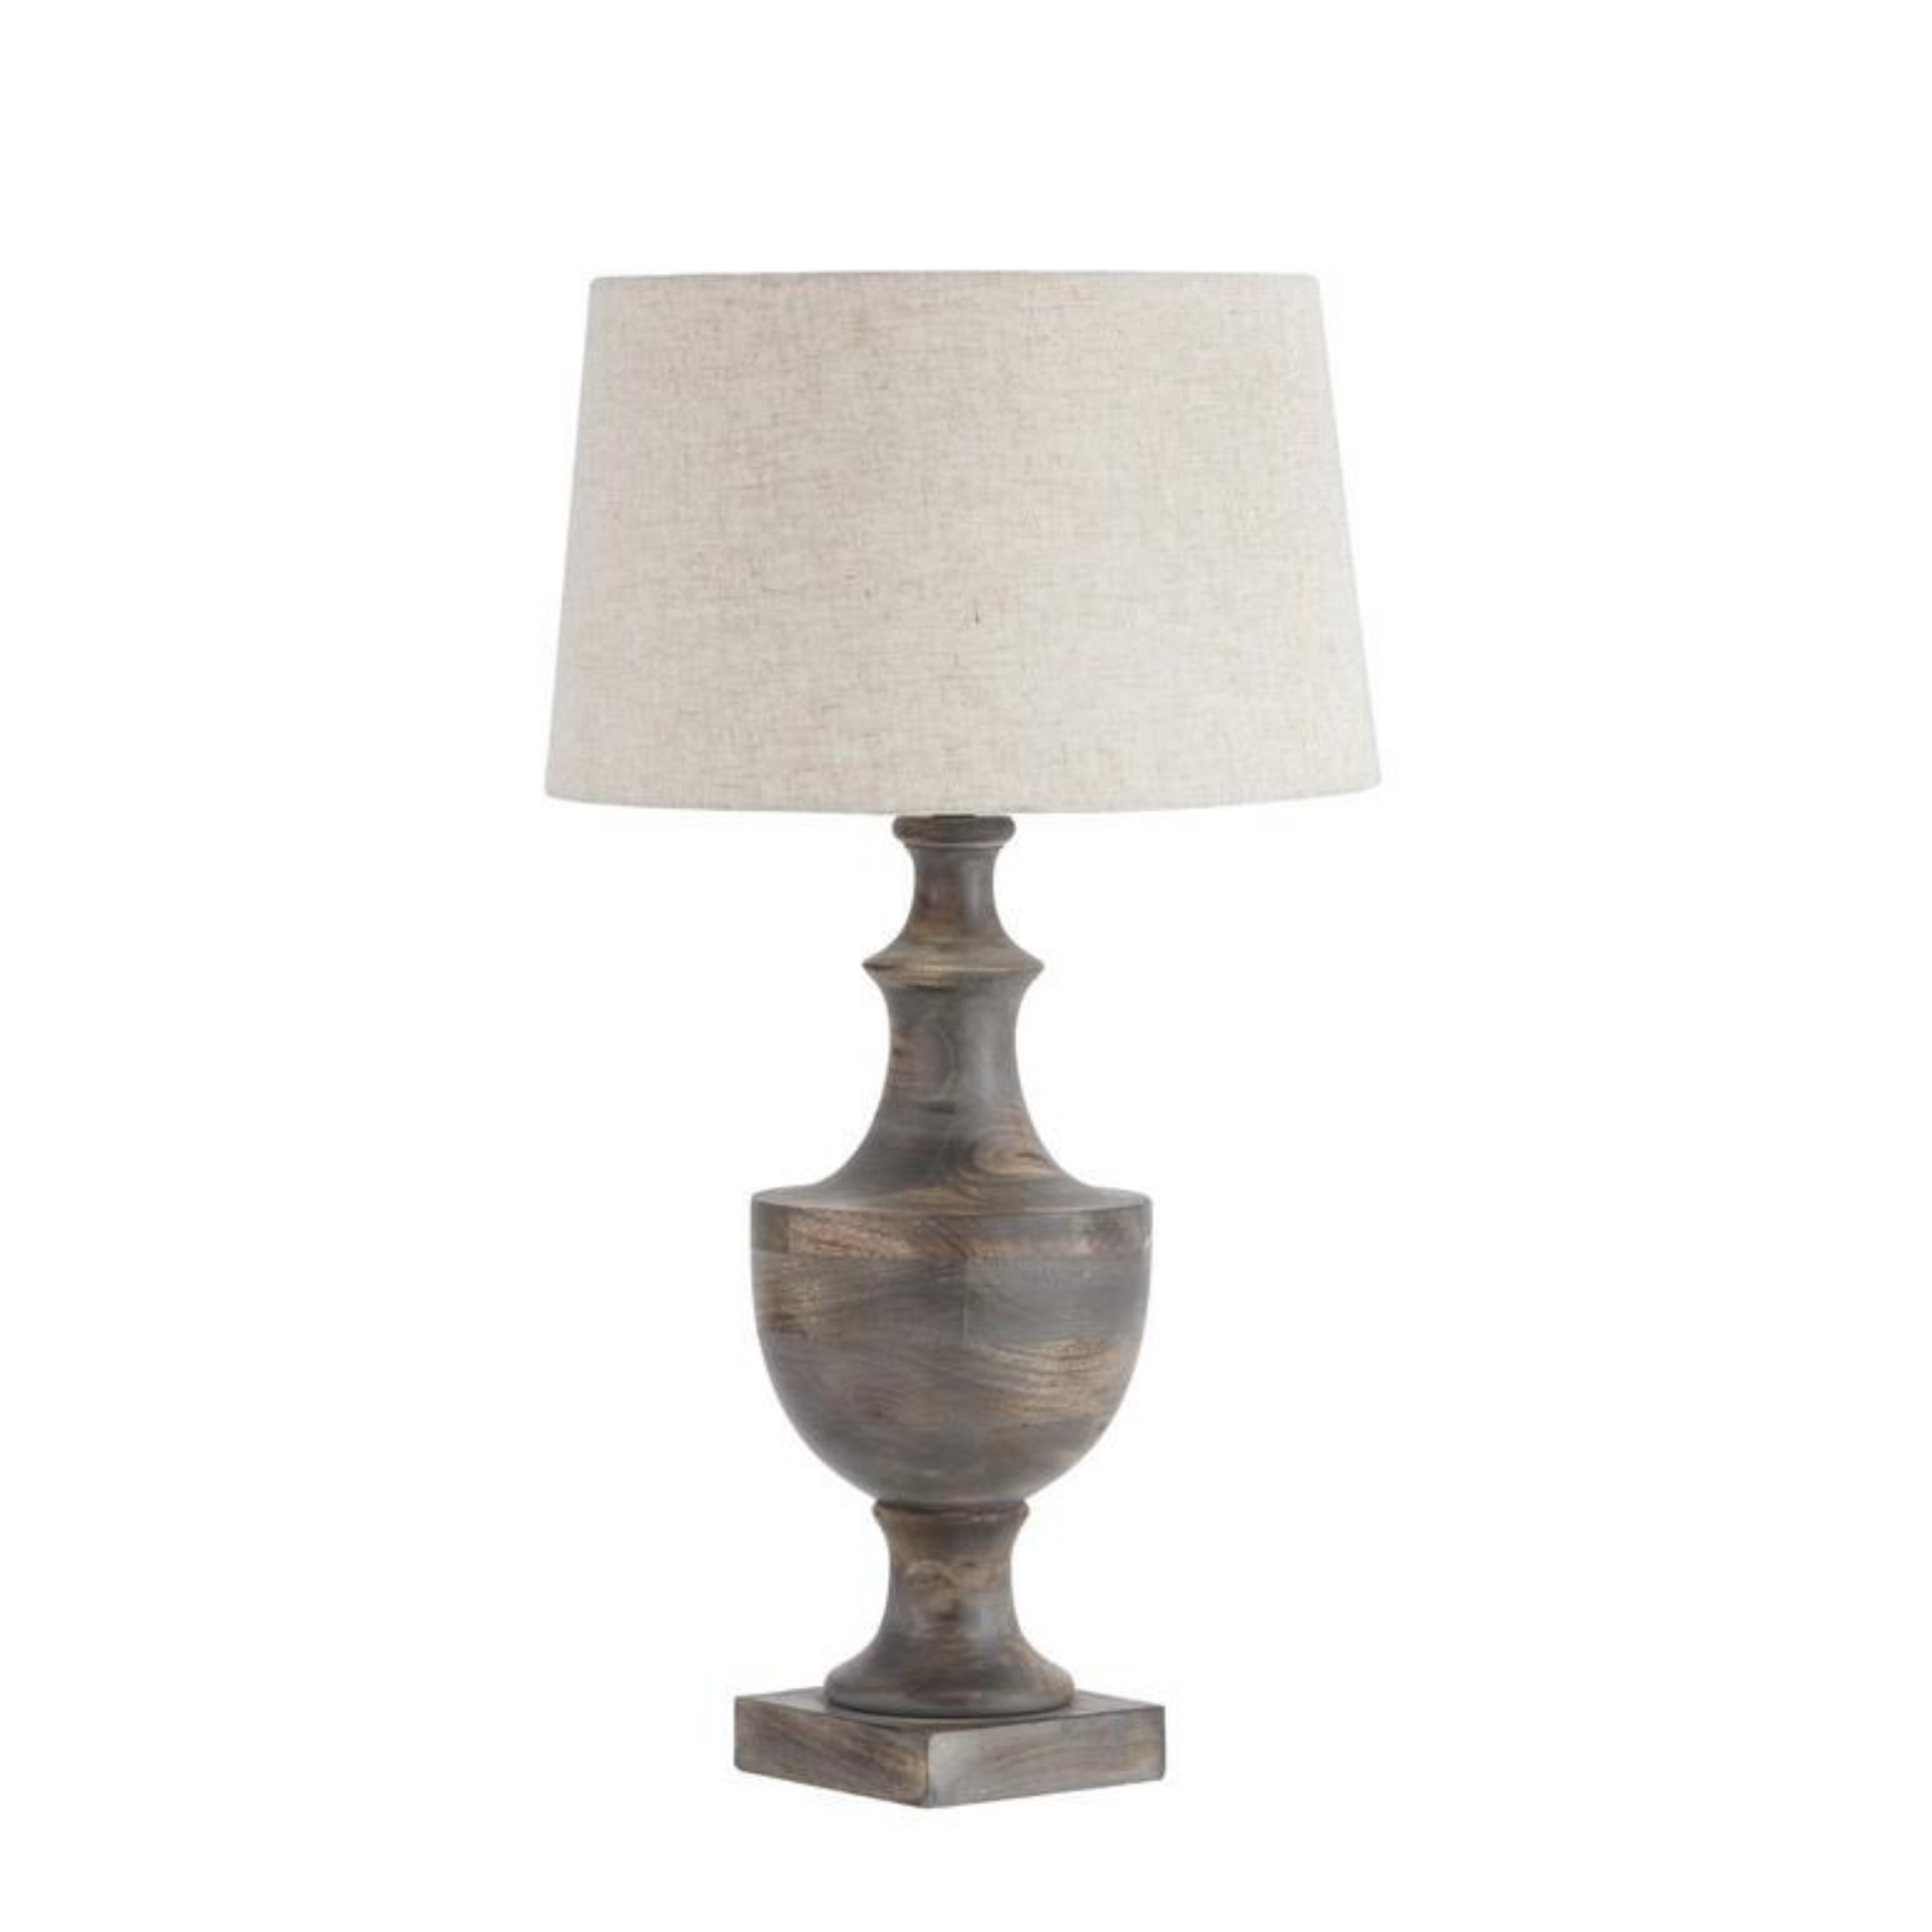 Featured image of post Wooden Floor Lamps Nz / Beautiful handmade wooden floor lamp.